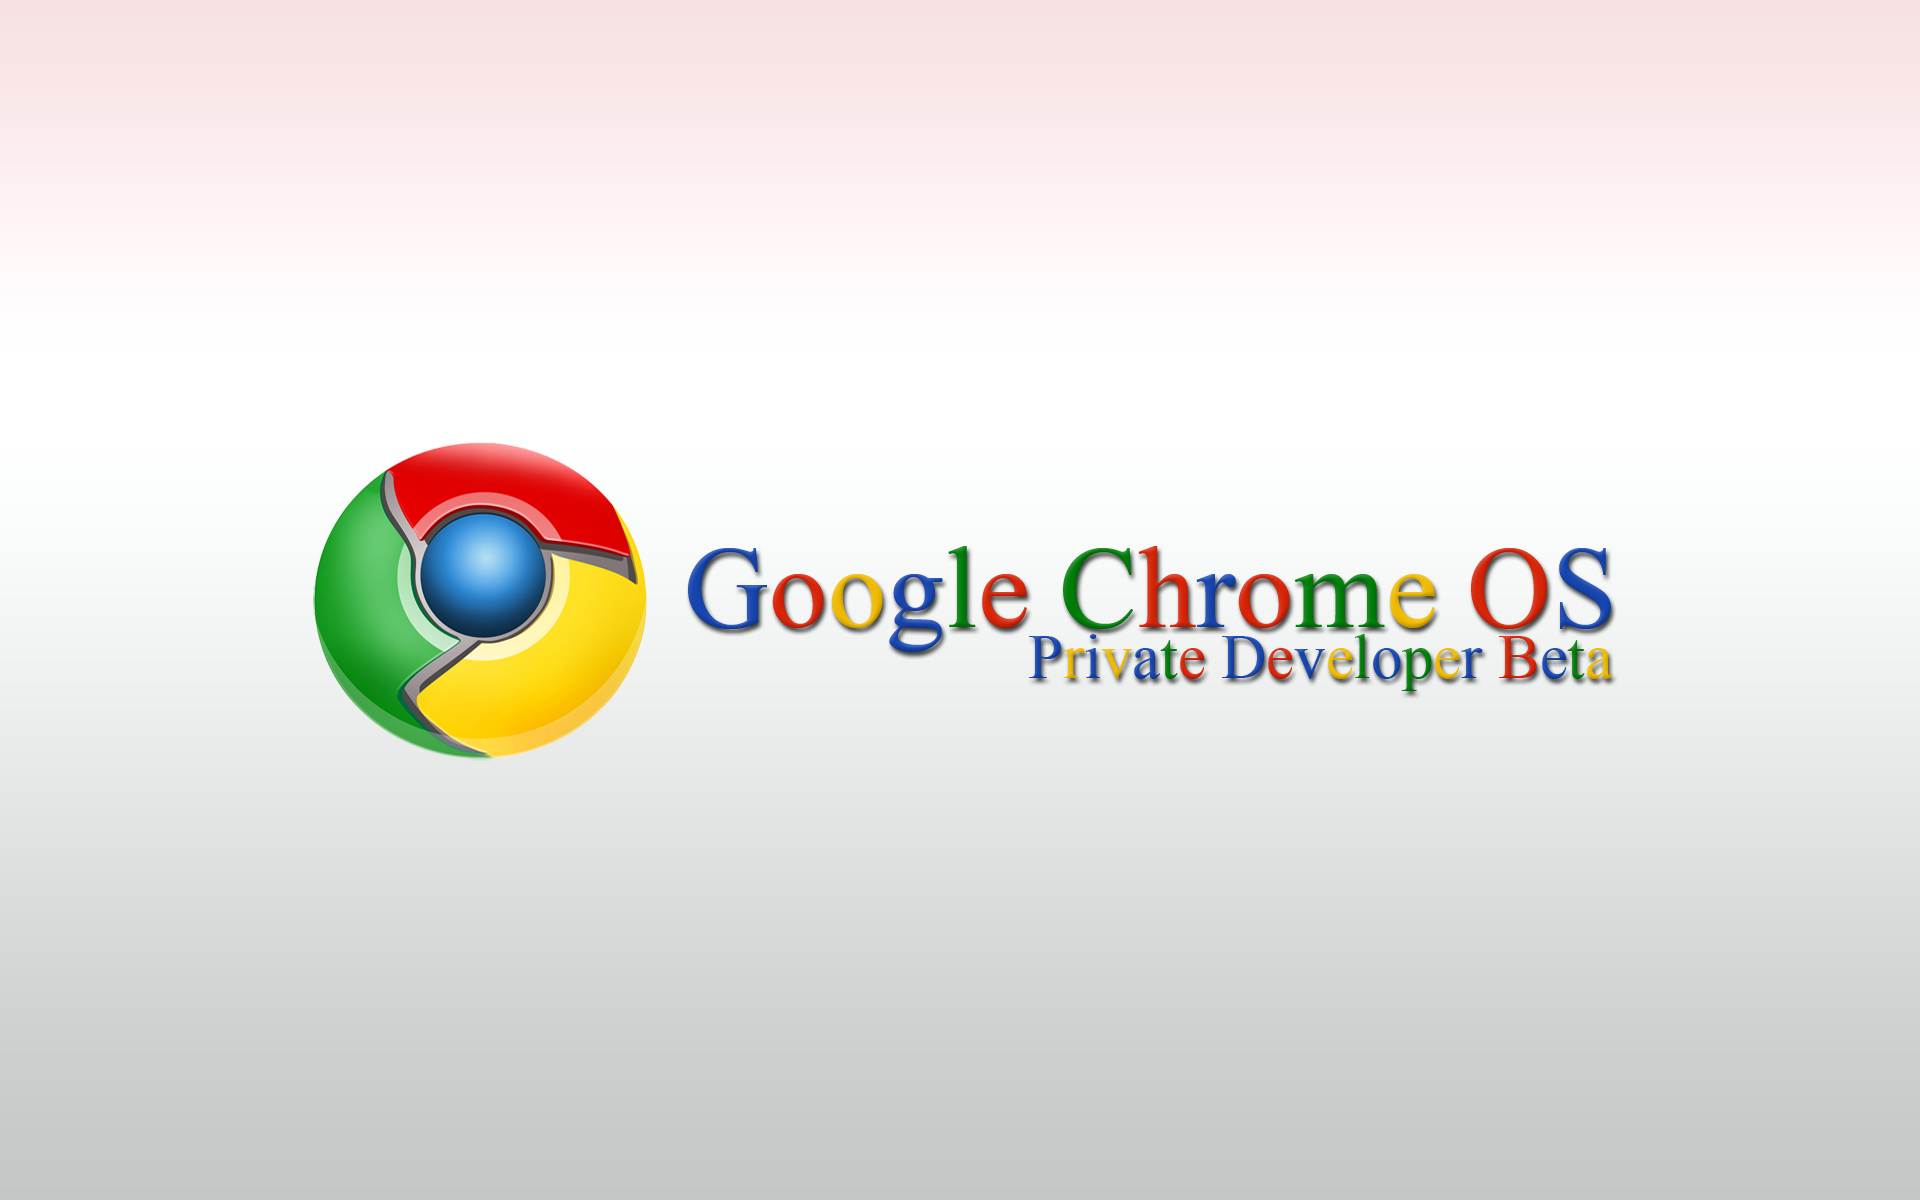 Google Chrome Desktop Wallpaper First HD